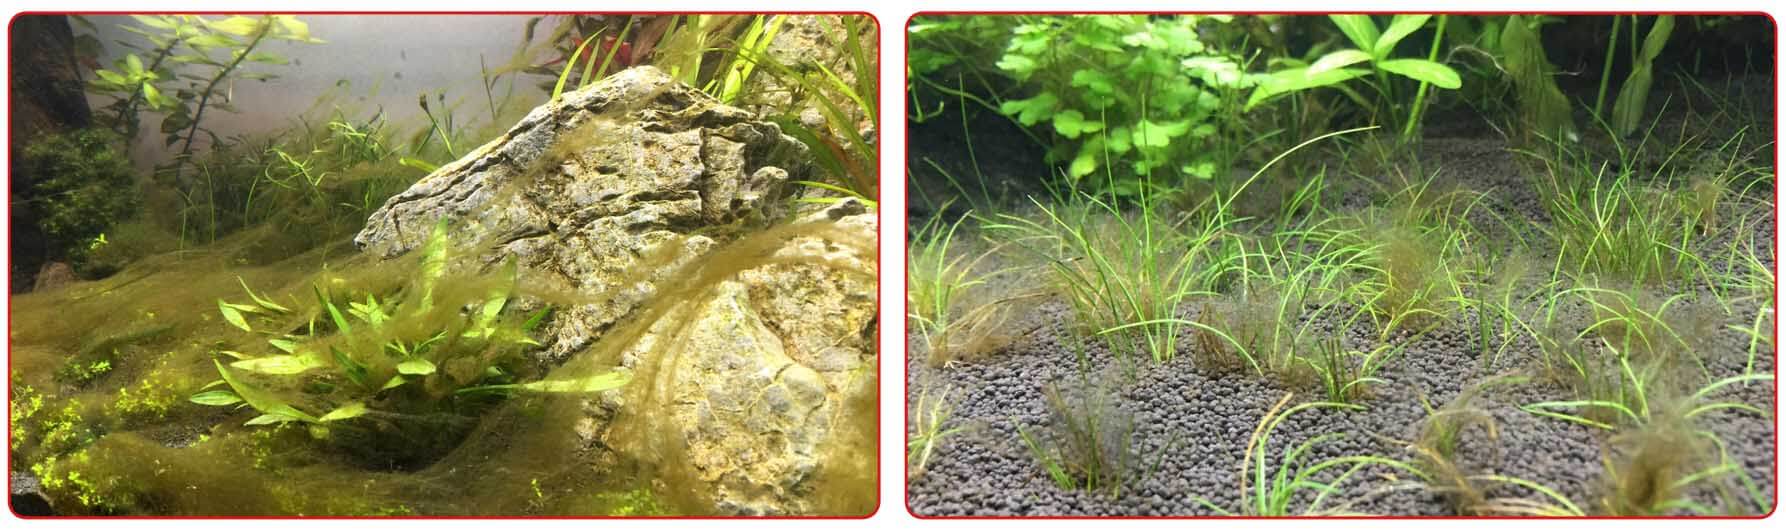 Бурые водоросли на растениях в аквариуме